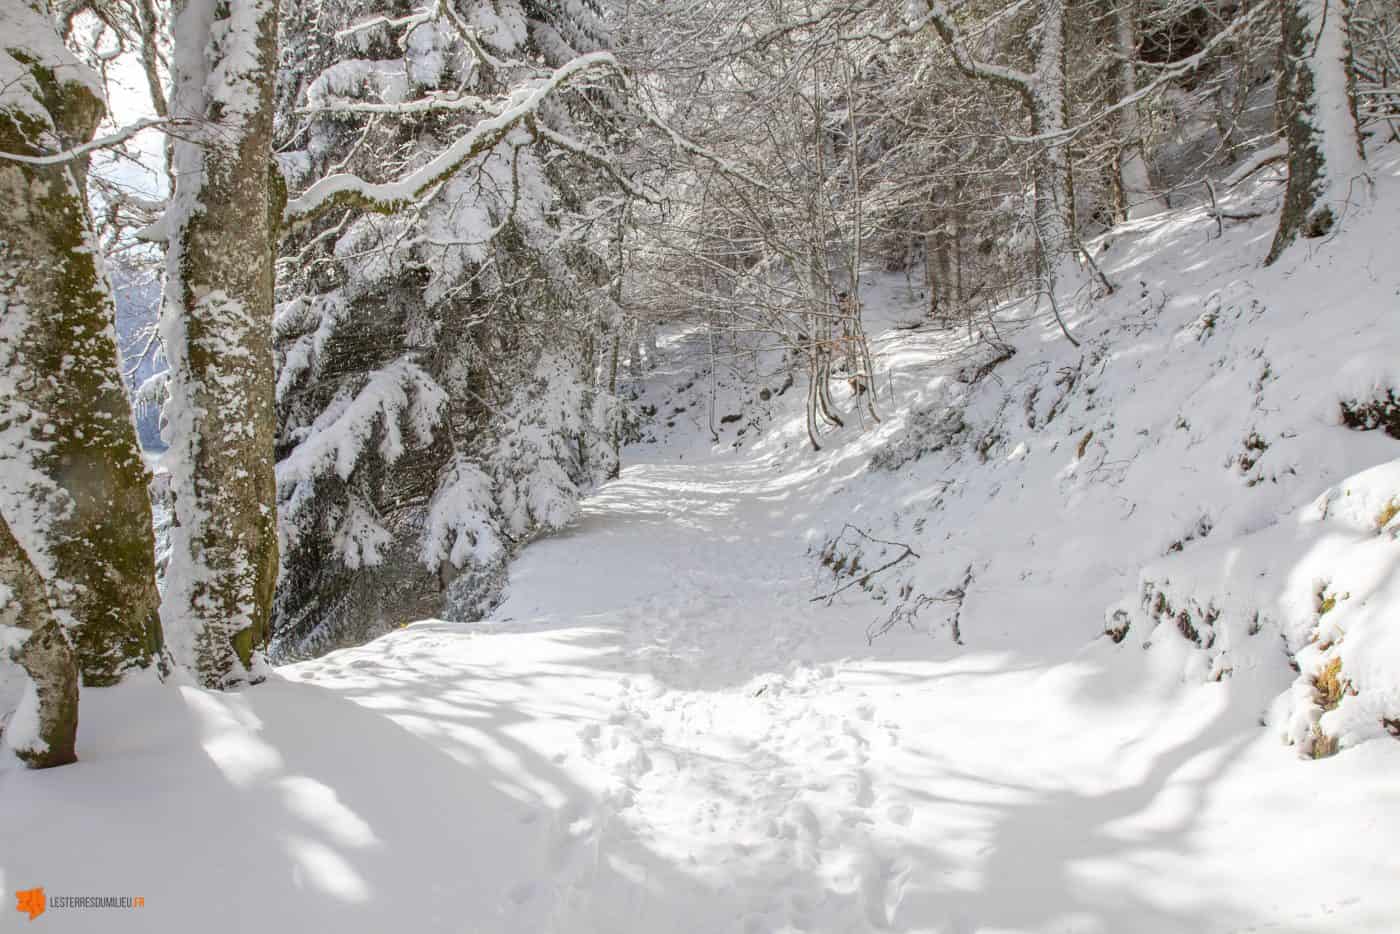 Chemin enneigé près du lac Pavin en Auvergne